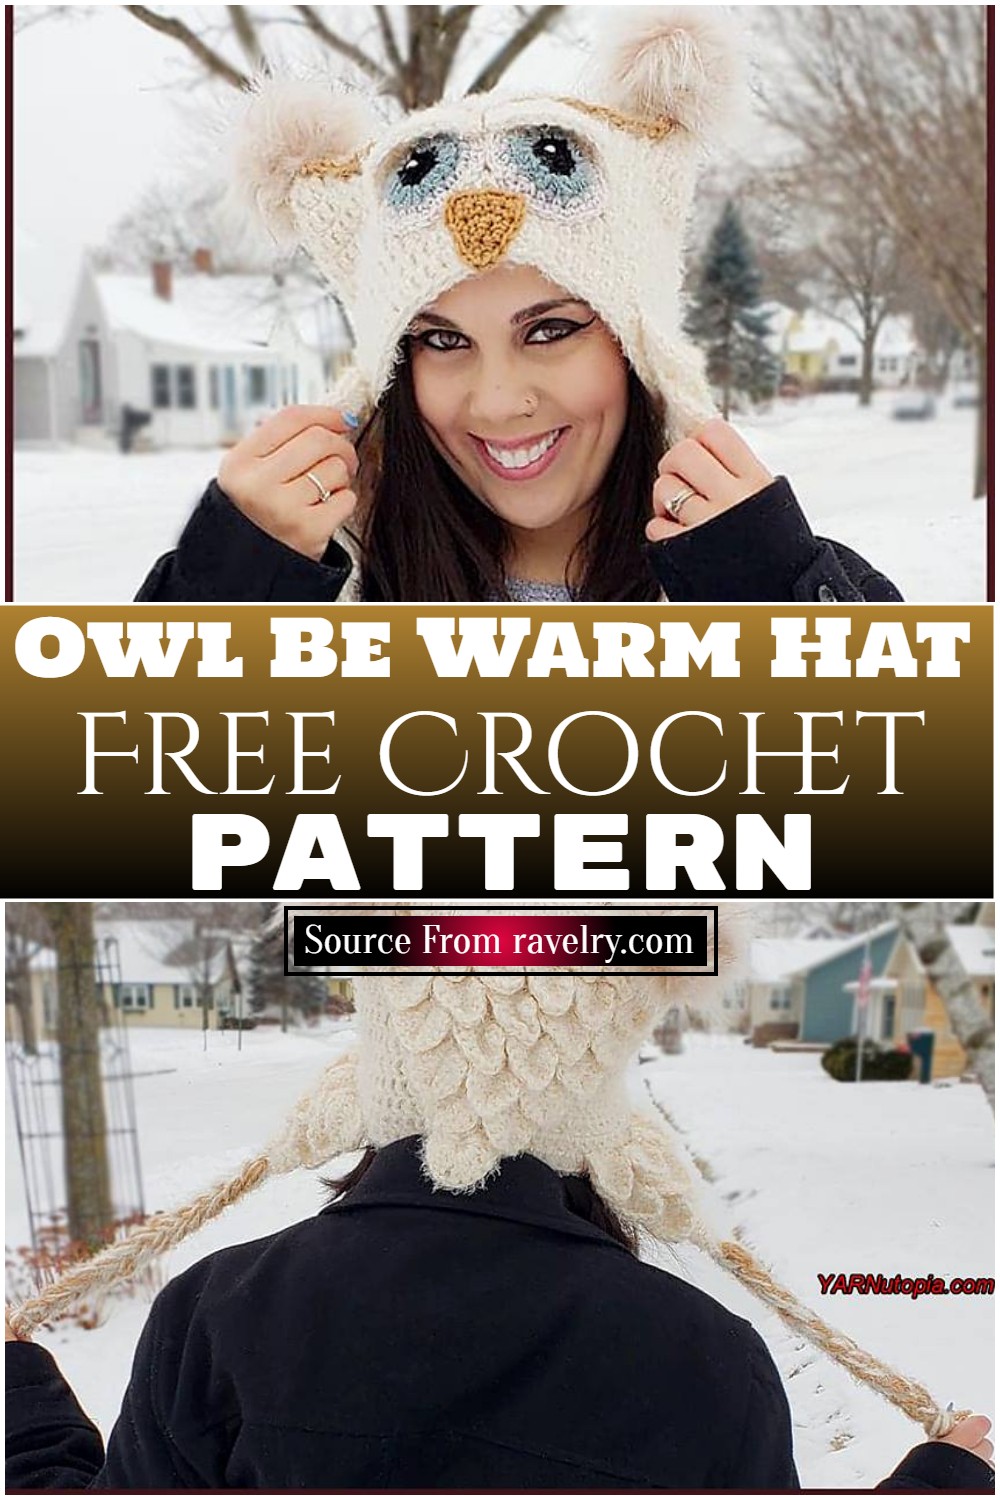 Free Crochet Owl Be Warm Hat ​pattern